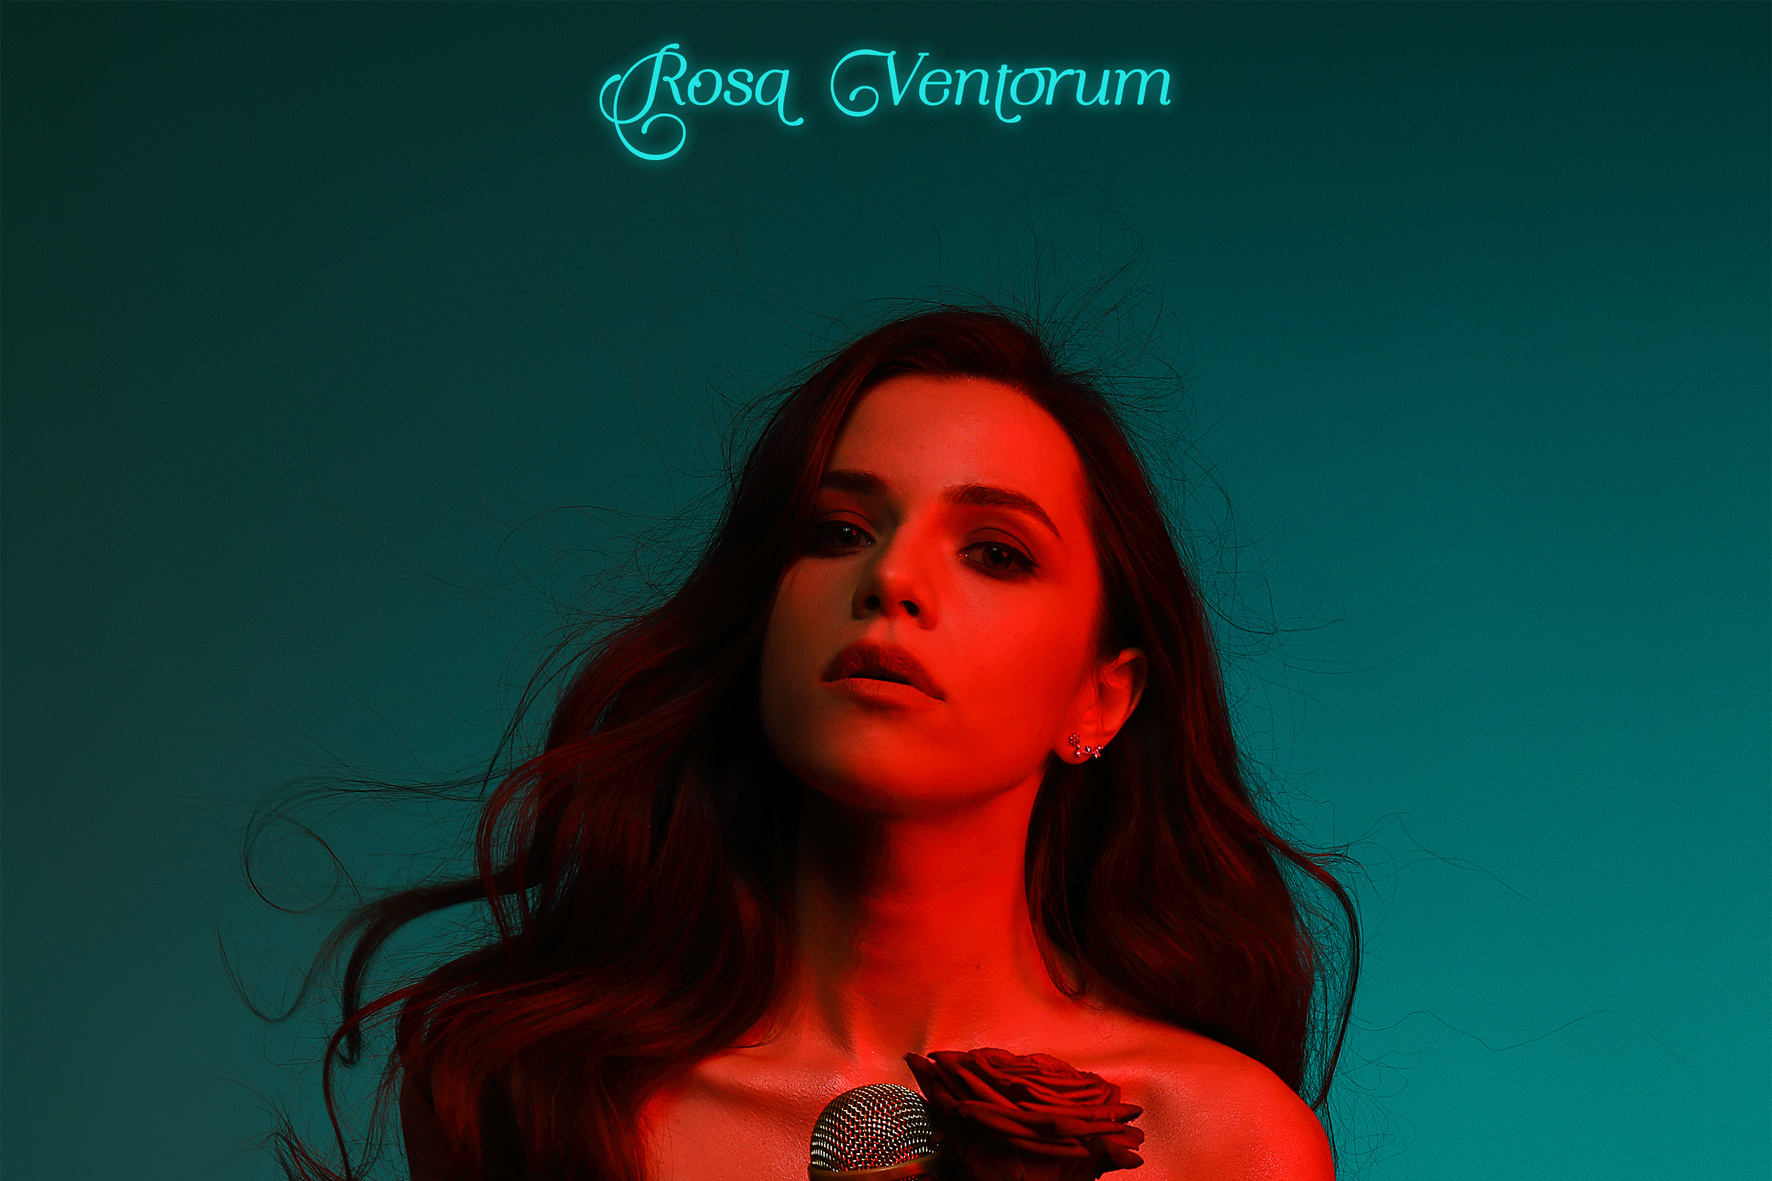 Христина Соловий выпустила первый за три года альбом "Rosa Ventorum"